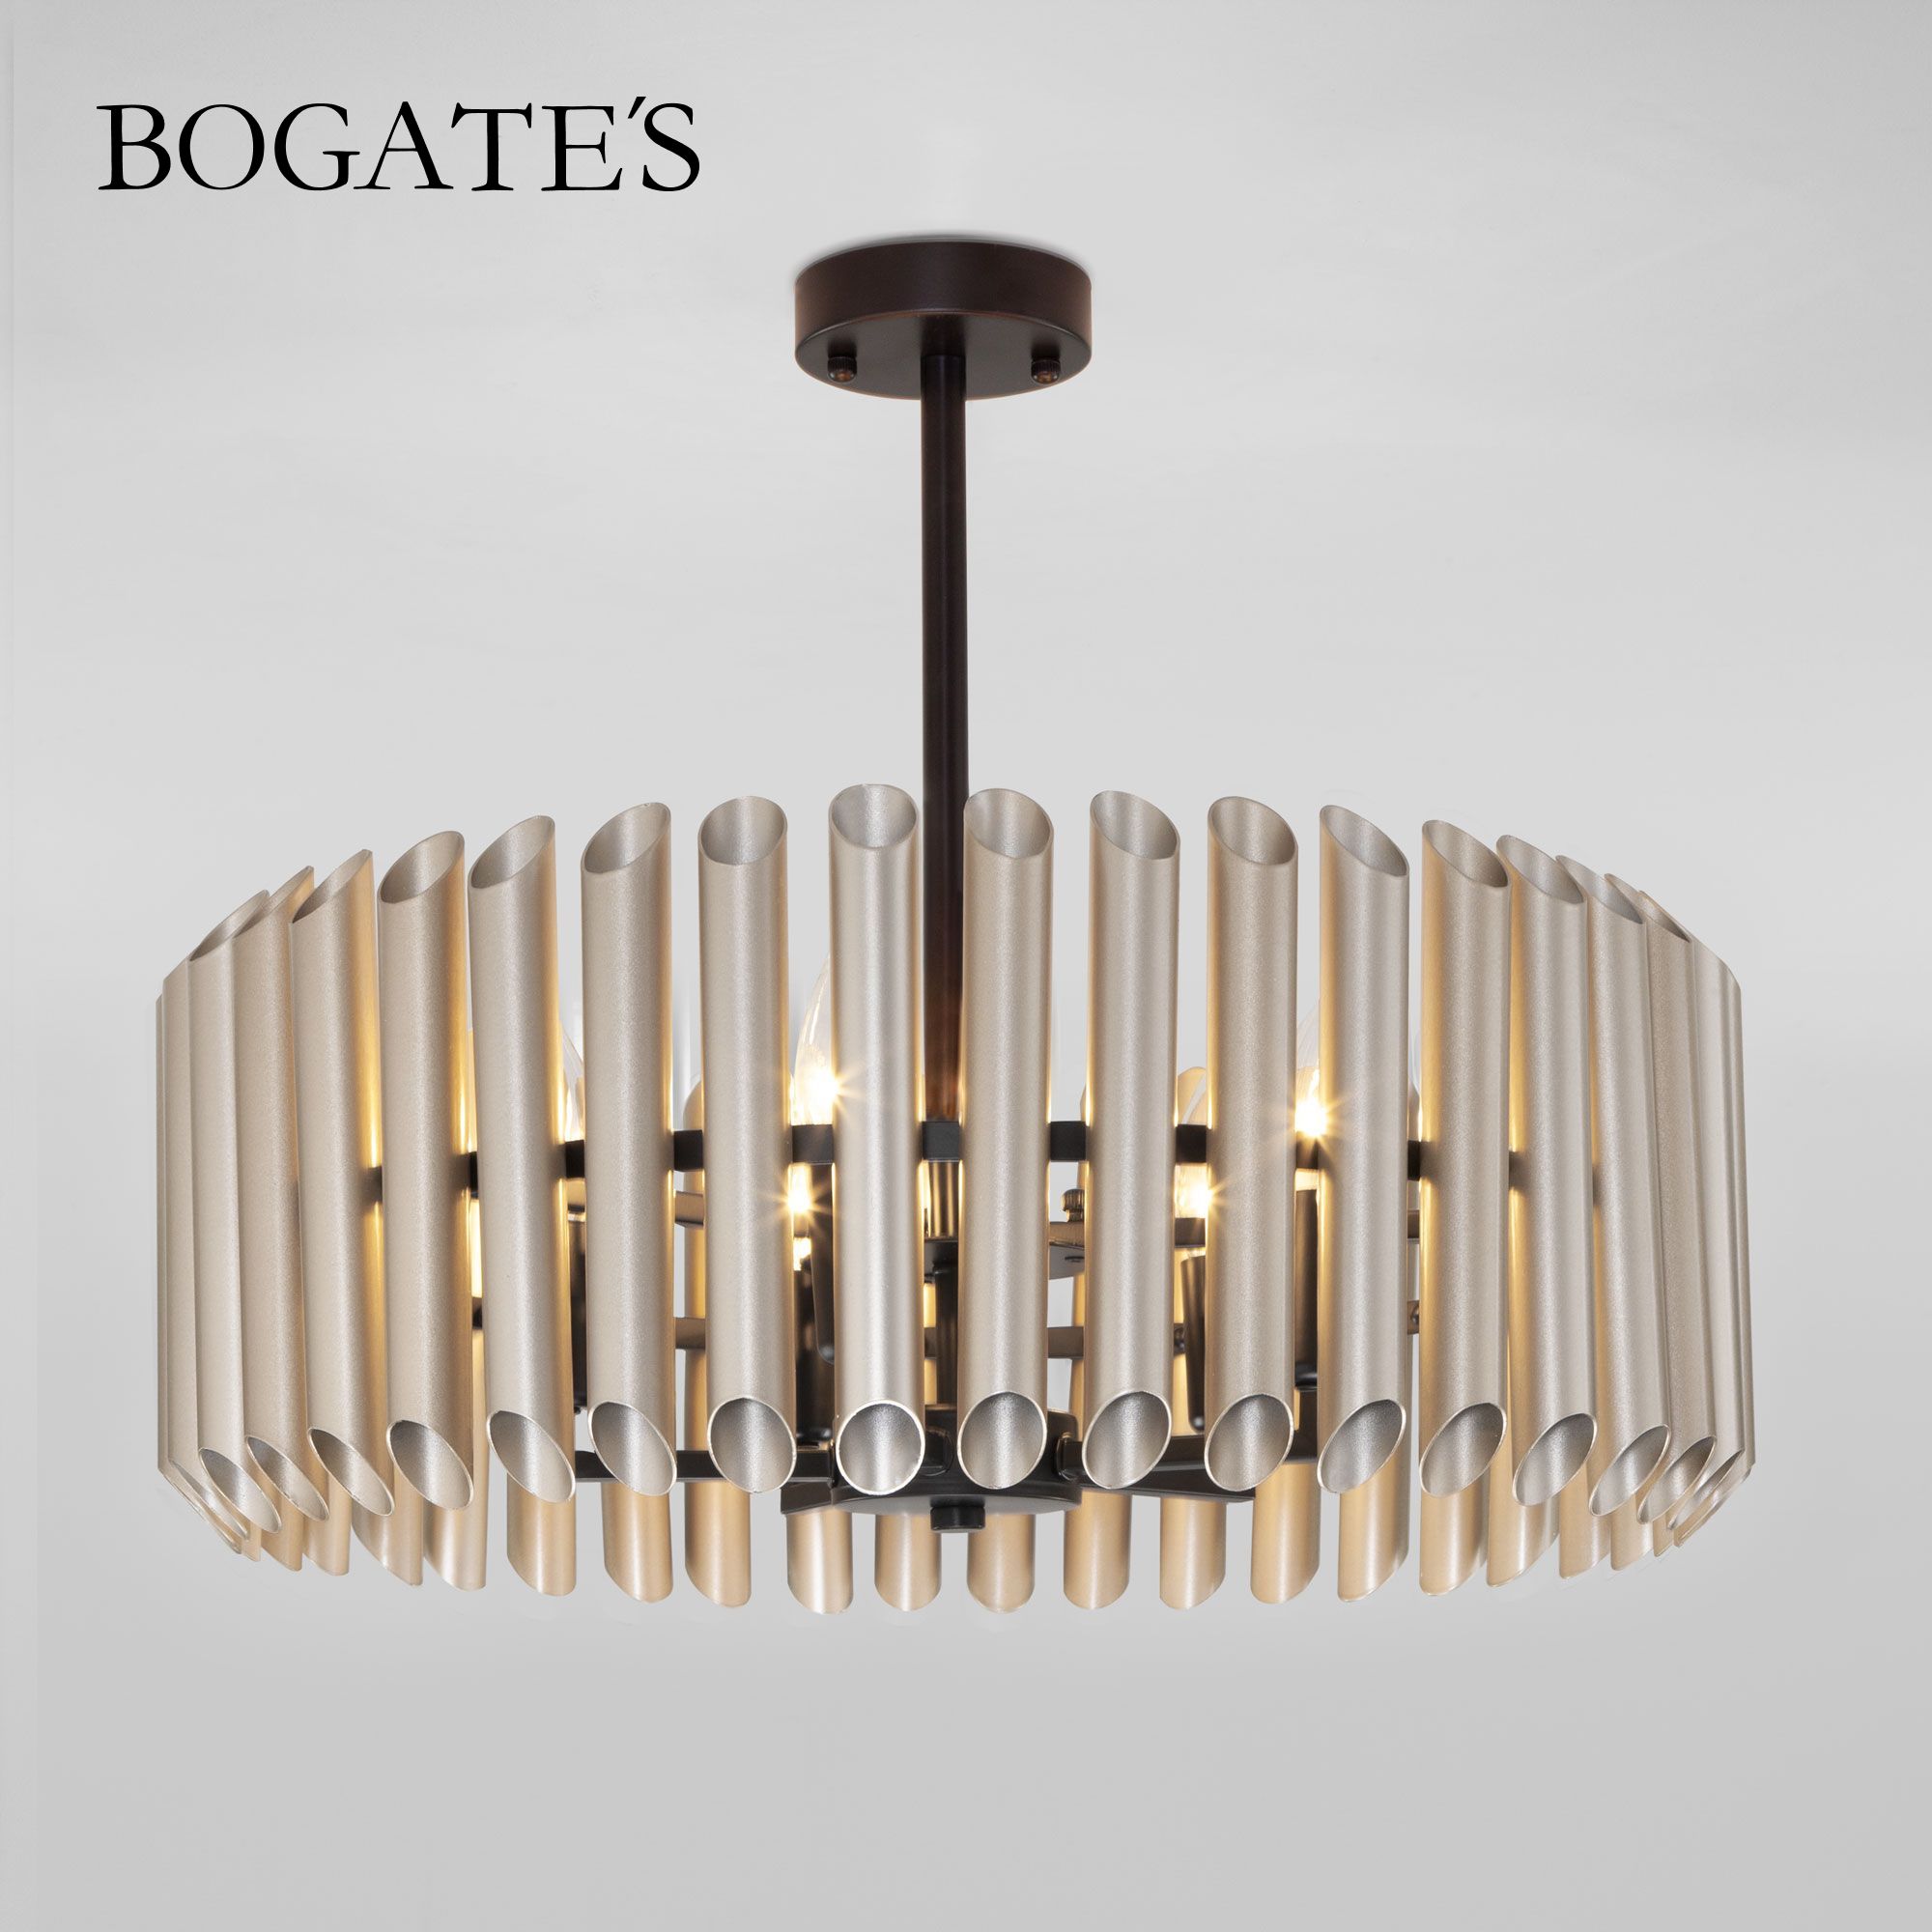 Потолочный светильник Bogate's Castellie 461/5 сатин с металлическим абажуром E14